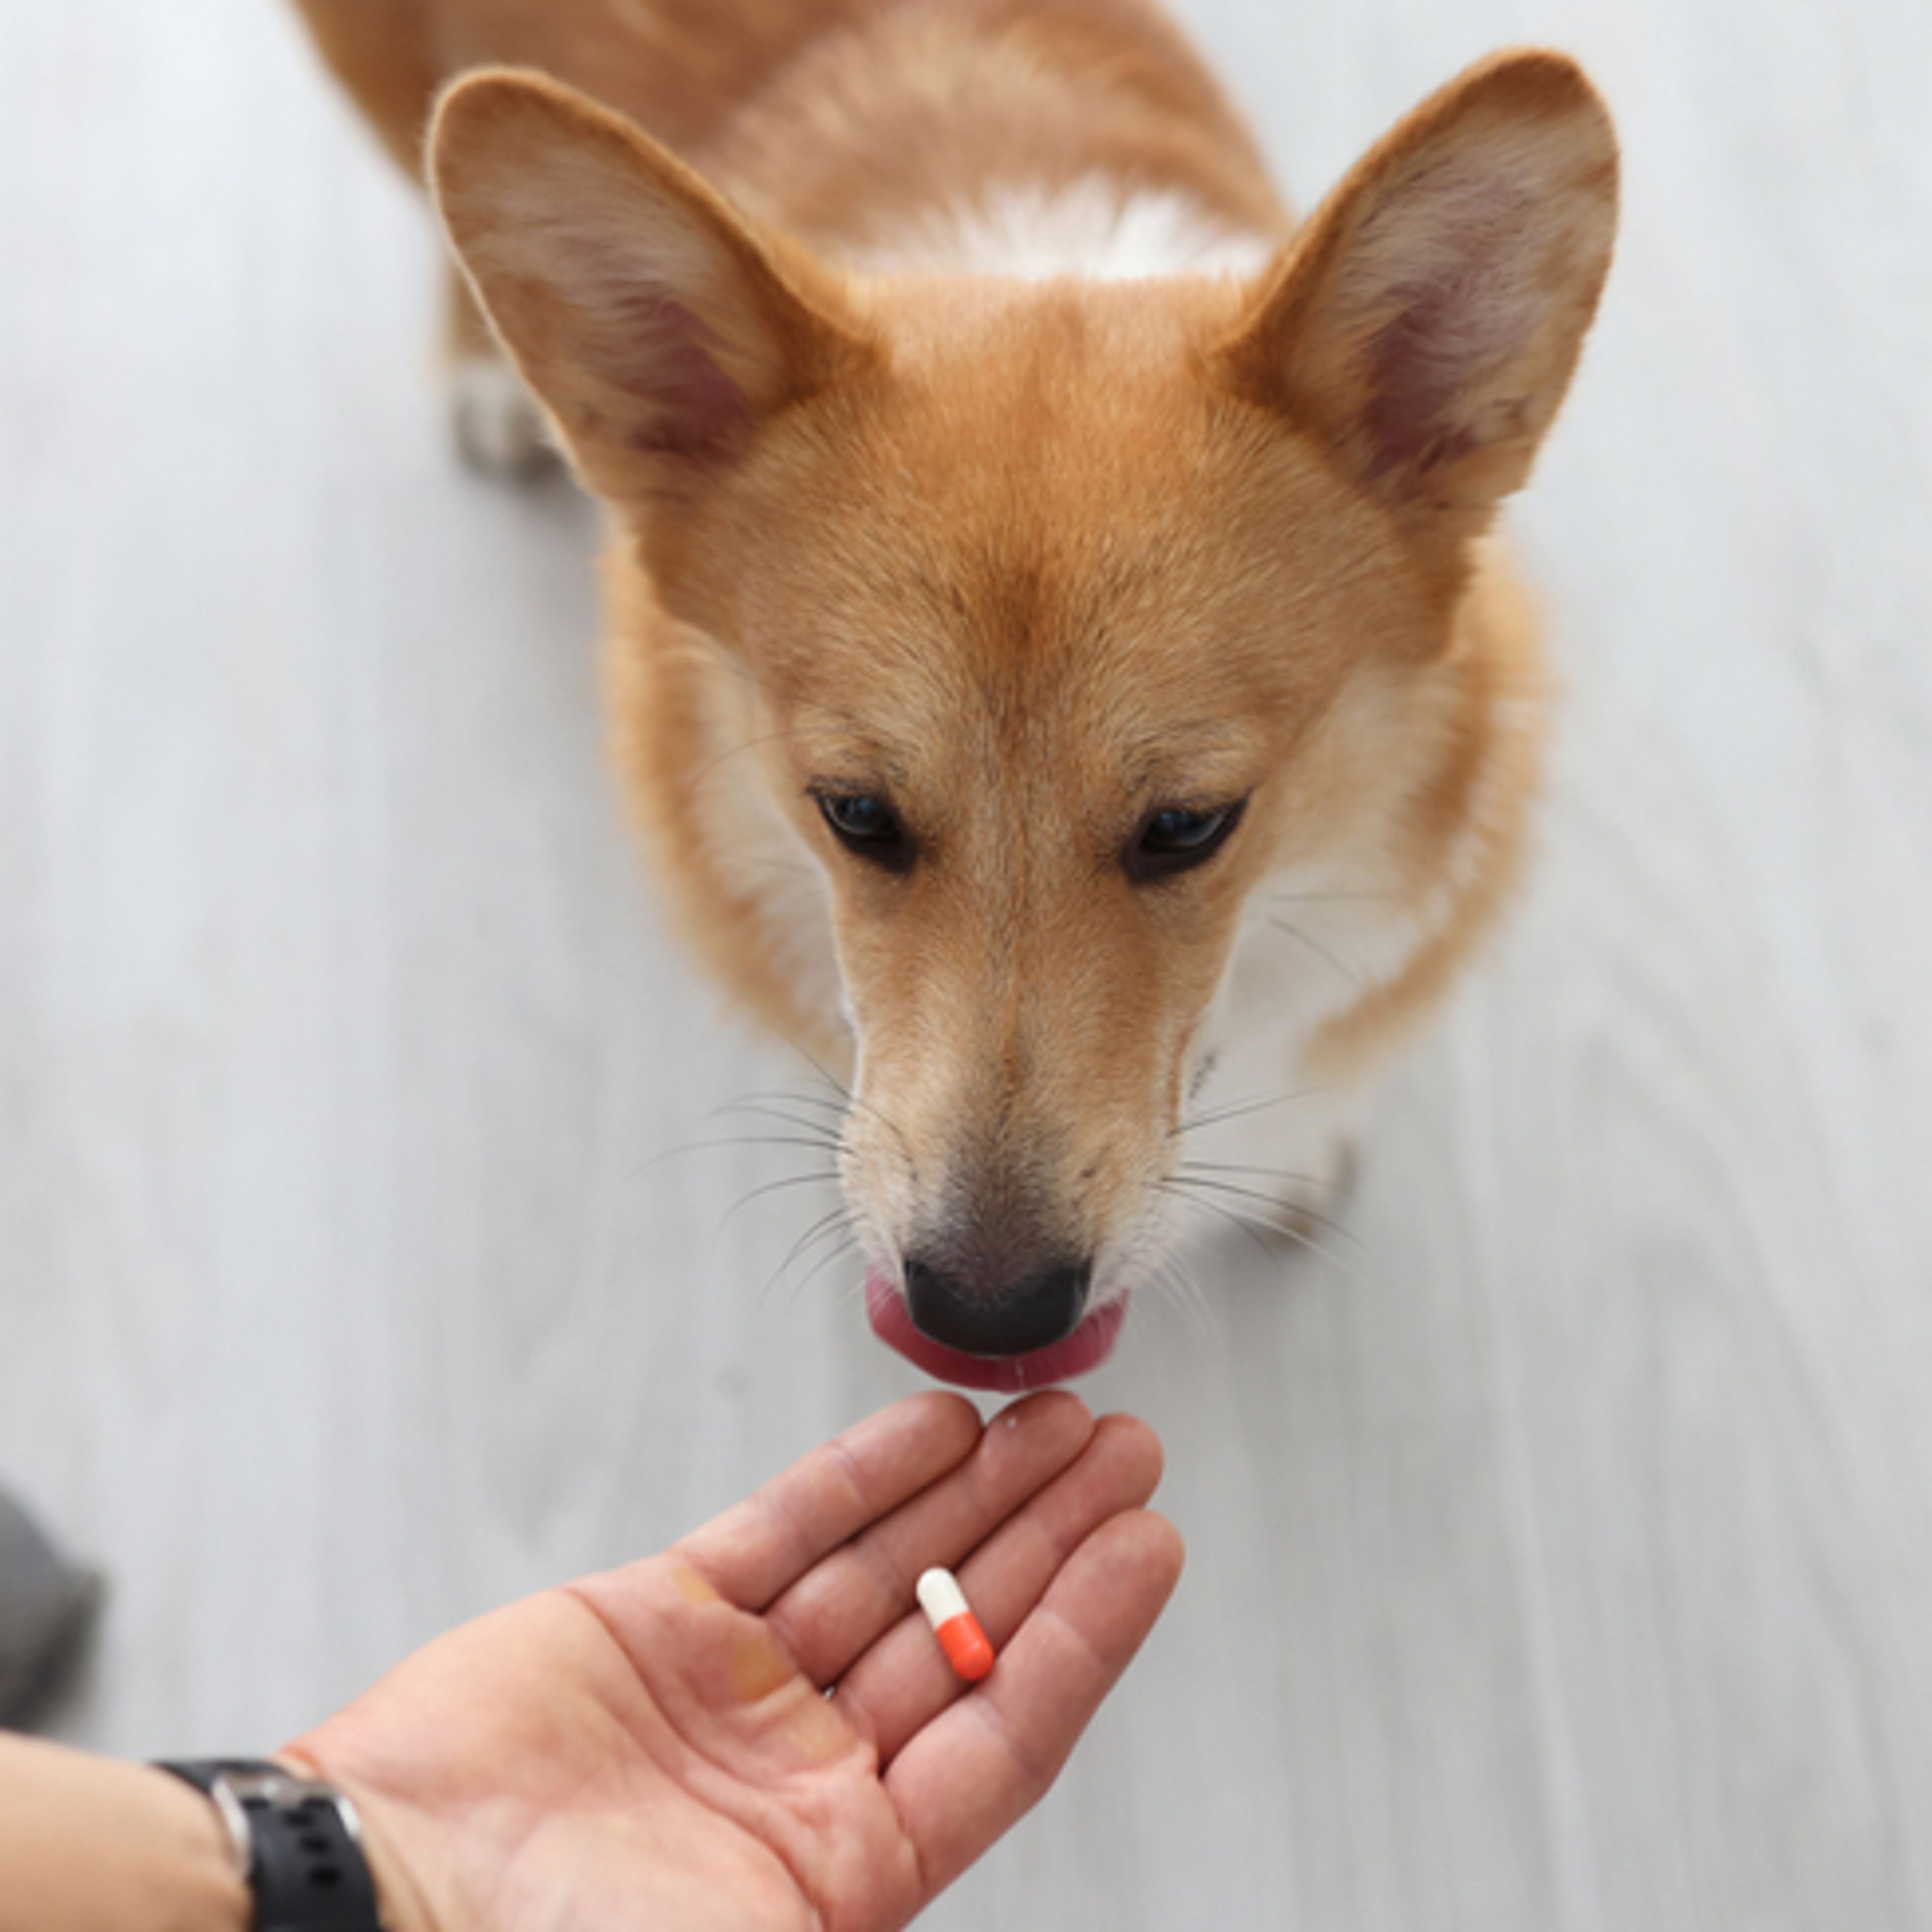 cane prende la pillola dalla mano del proprietario 